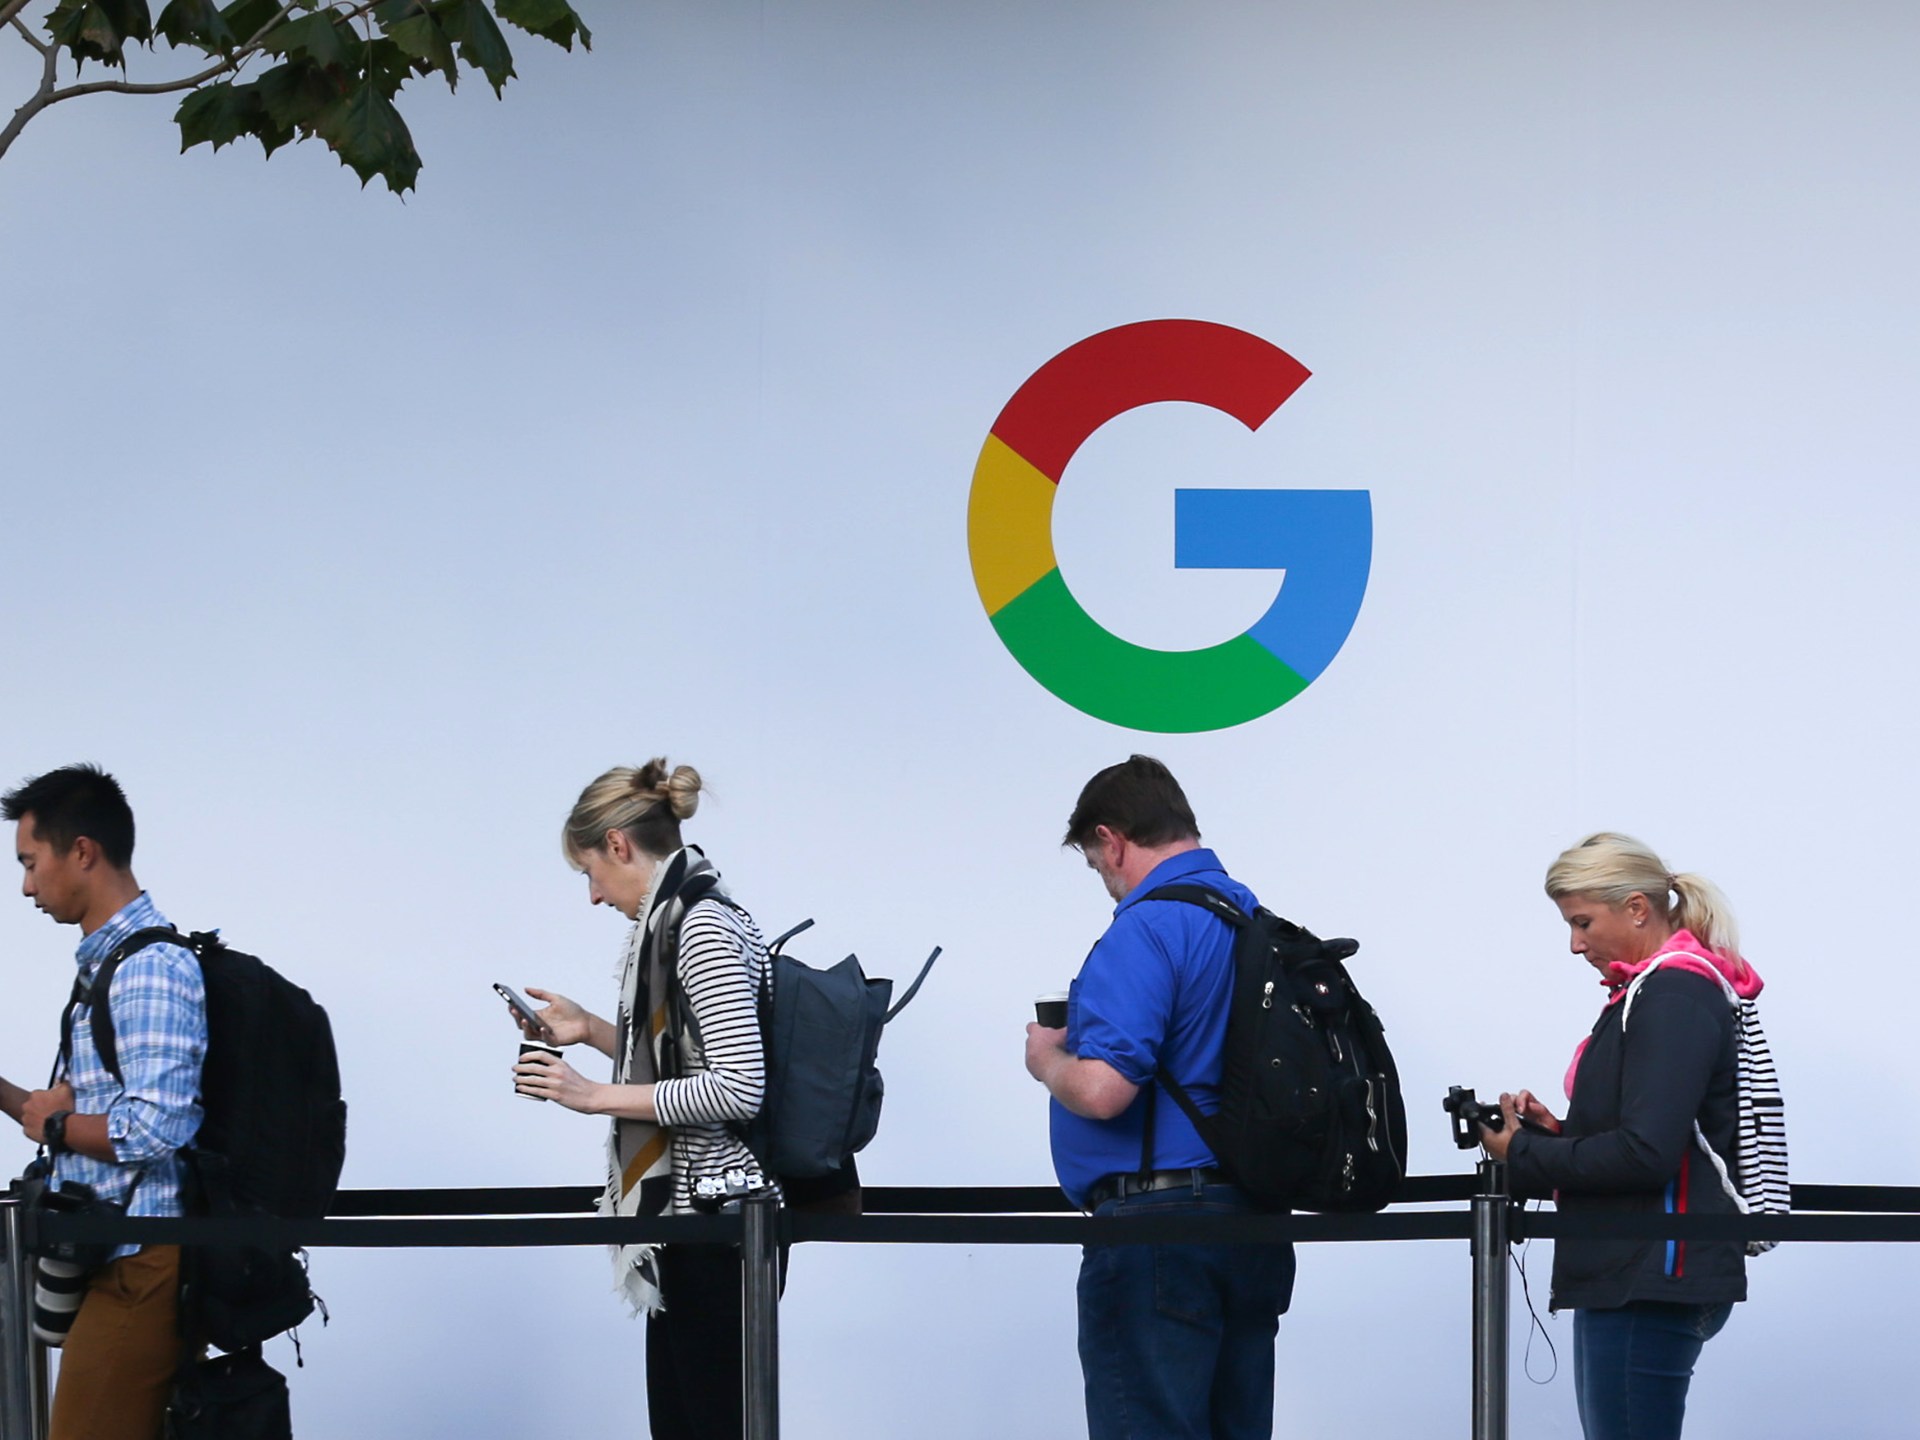 موظف جوجل يستقيل قائلا “إسكات الفلسطينيين” |  أخبار التكنولوجيا